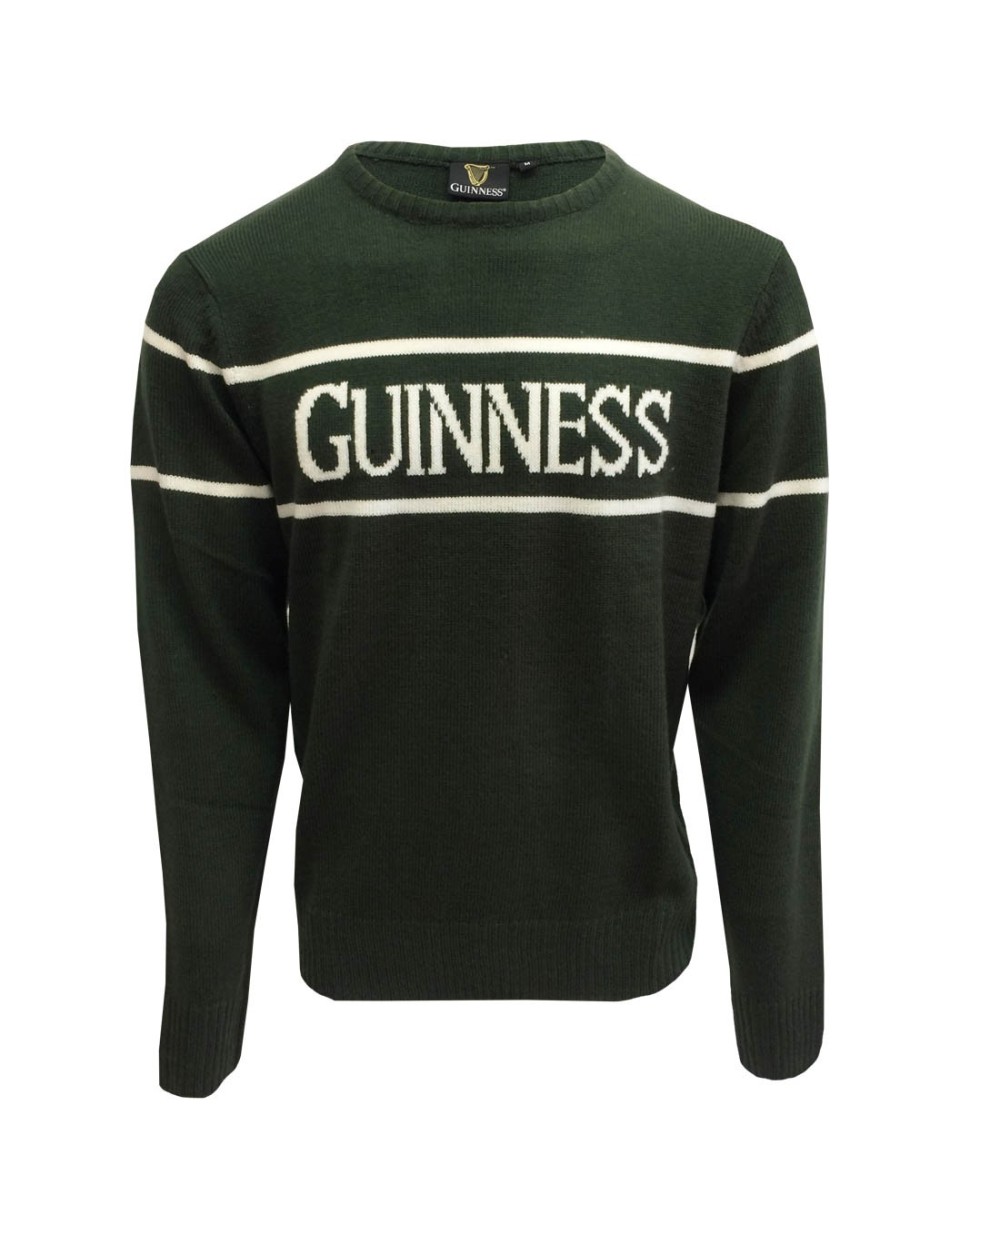 Guinness Bottle Green Crew Neck Unisex Sweater